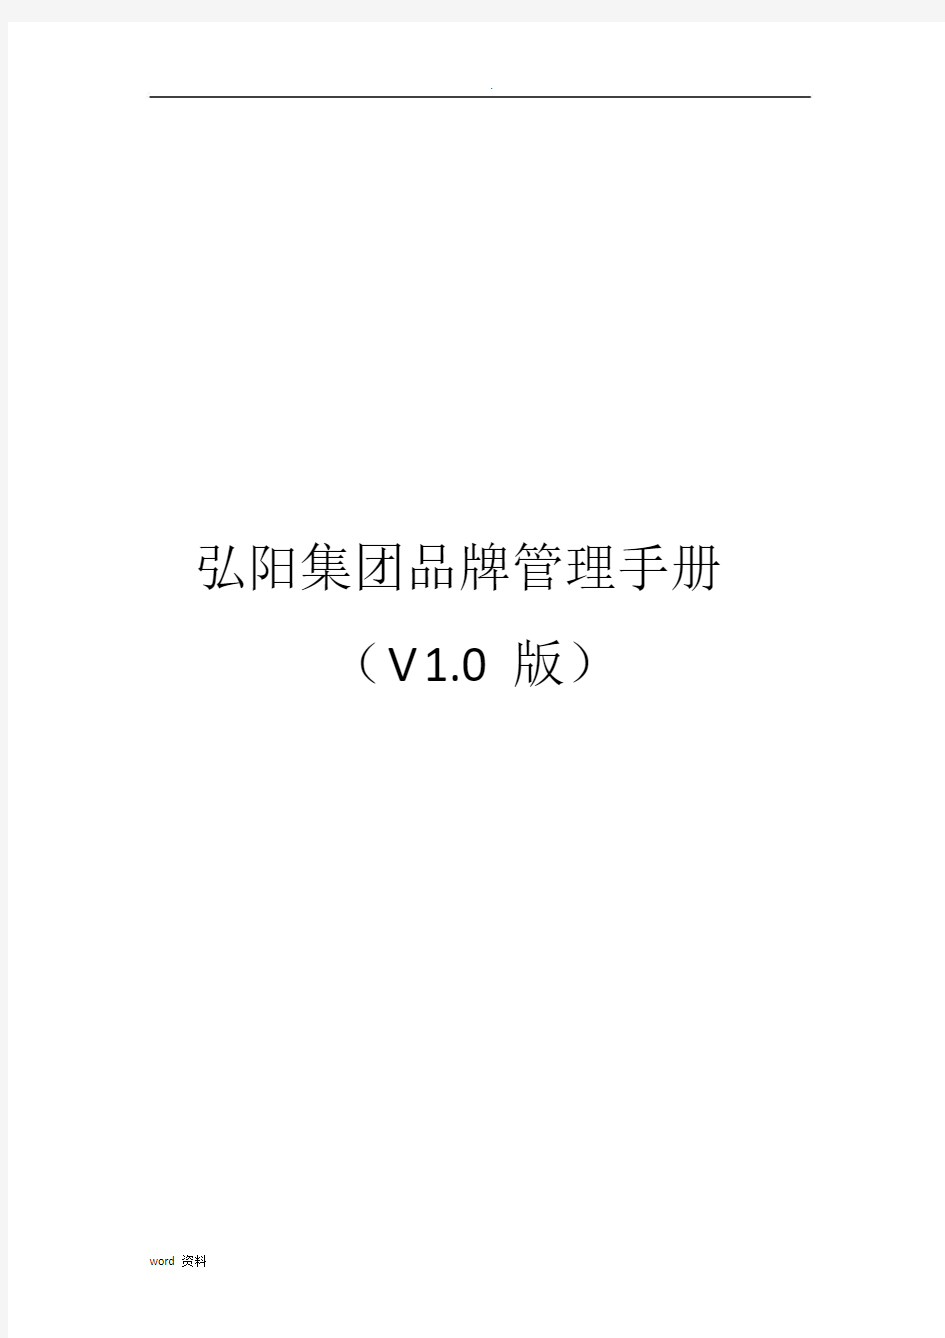 弘阳集团品牌管理手册V1.0版.doc